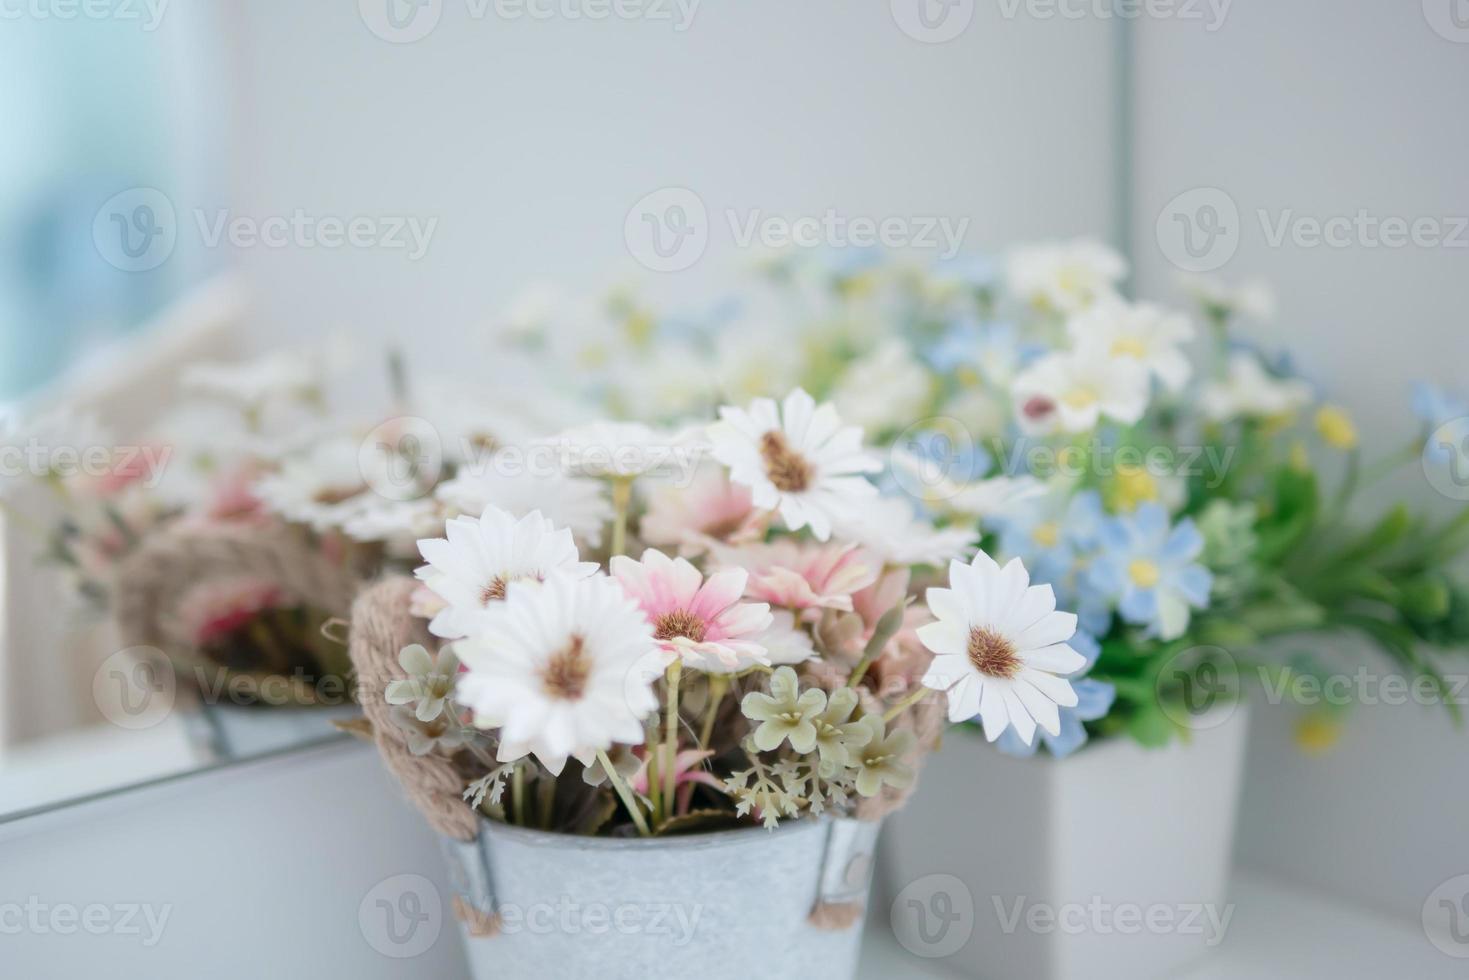 bloemen vervagen met stuifmeelreflectie in de spiegel foto